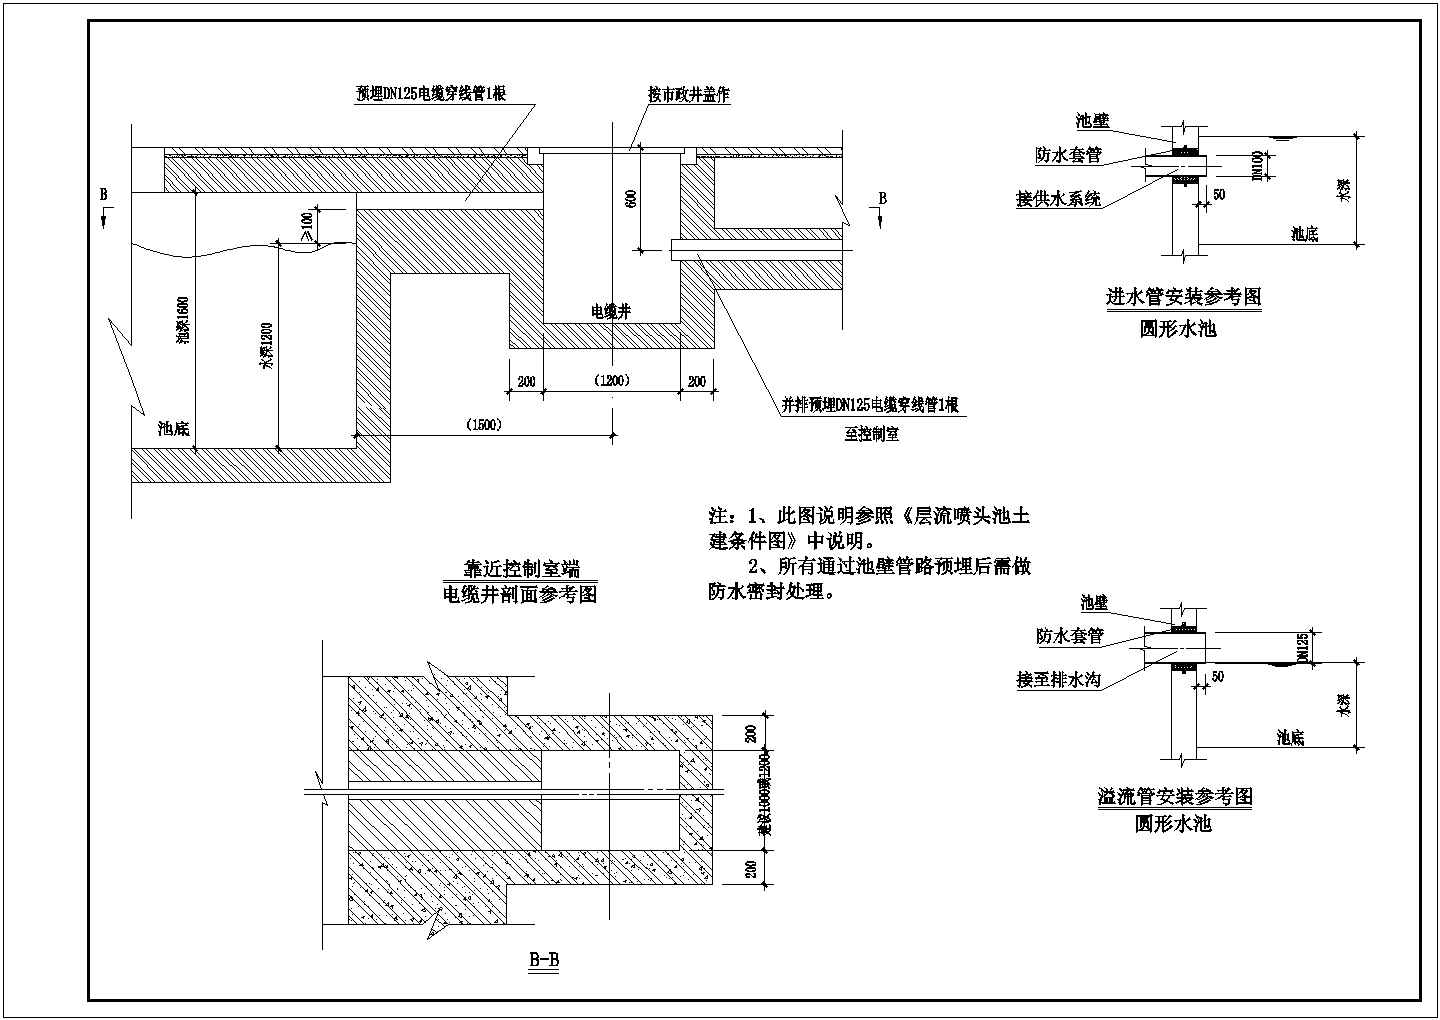 南京某景区音乐喷泉全套施工设计cad图(含施工设计说明)